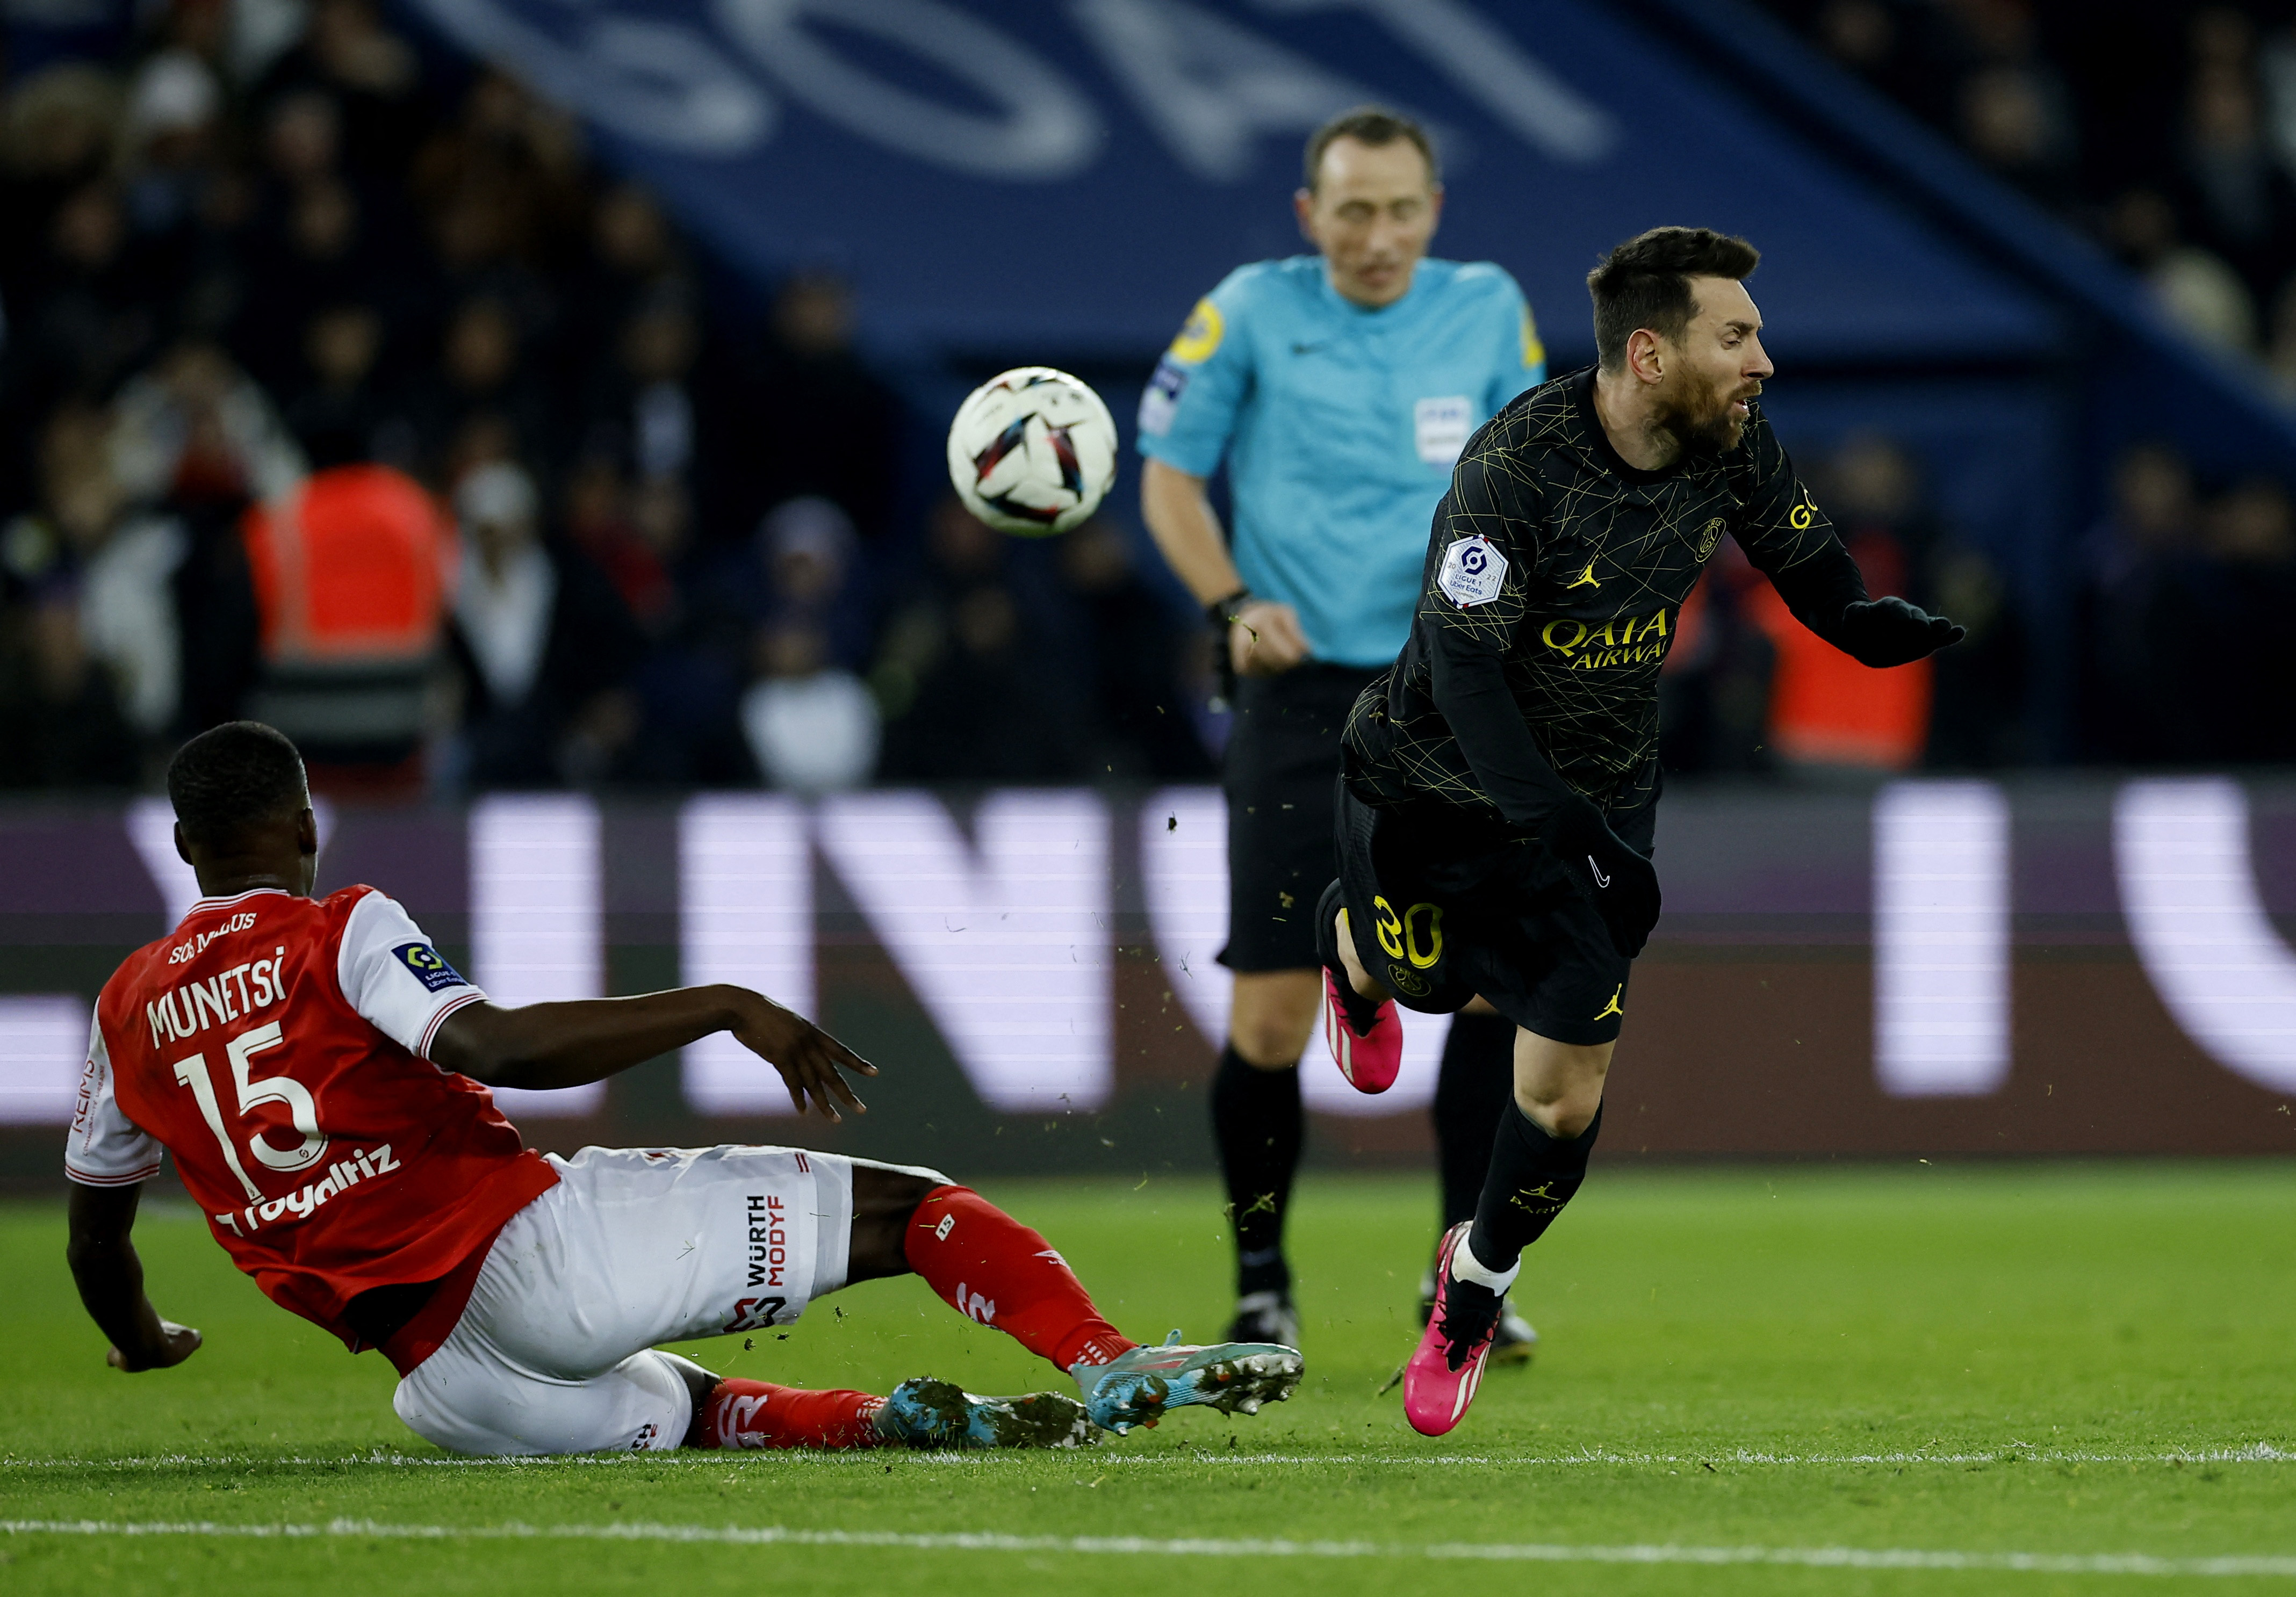 Messi busca espacios pero el juego brusco del Reims le corta los avances (Foto: Reuters)